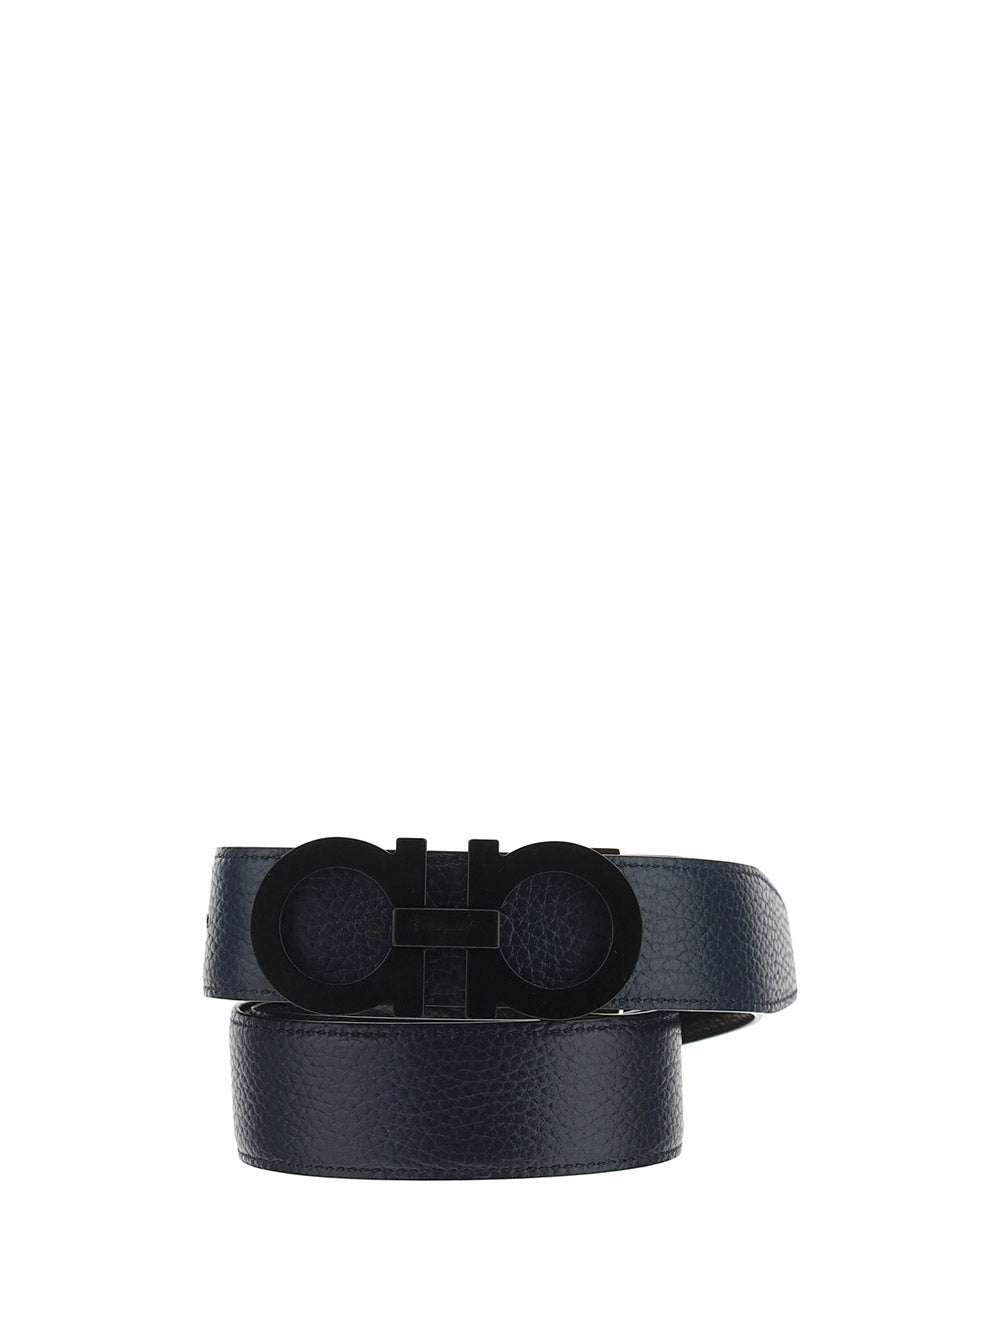 Reversible And Adjustable Gancini Belt - Black / Blue Marine